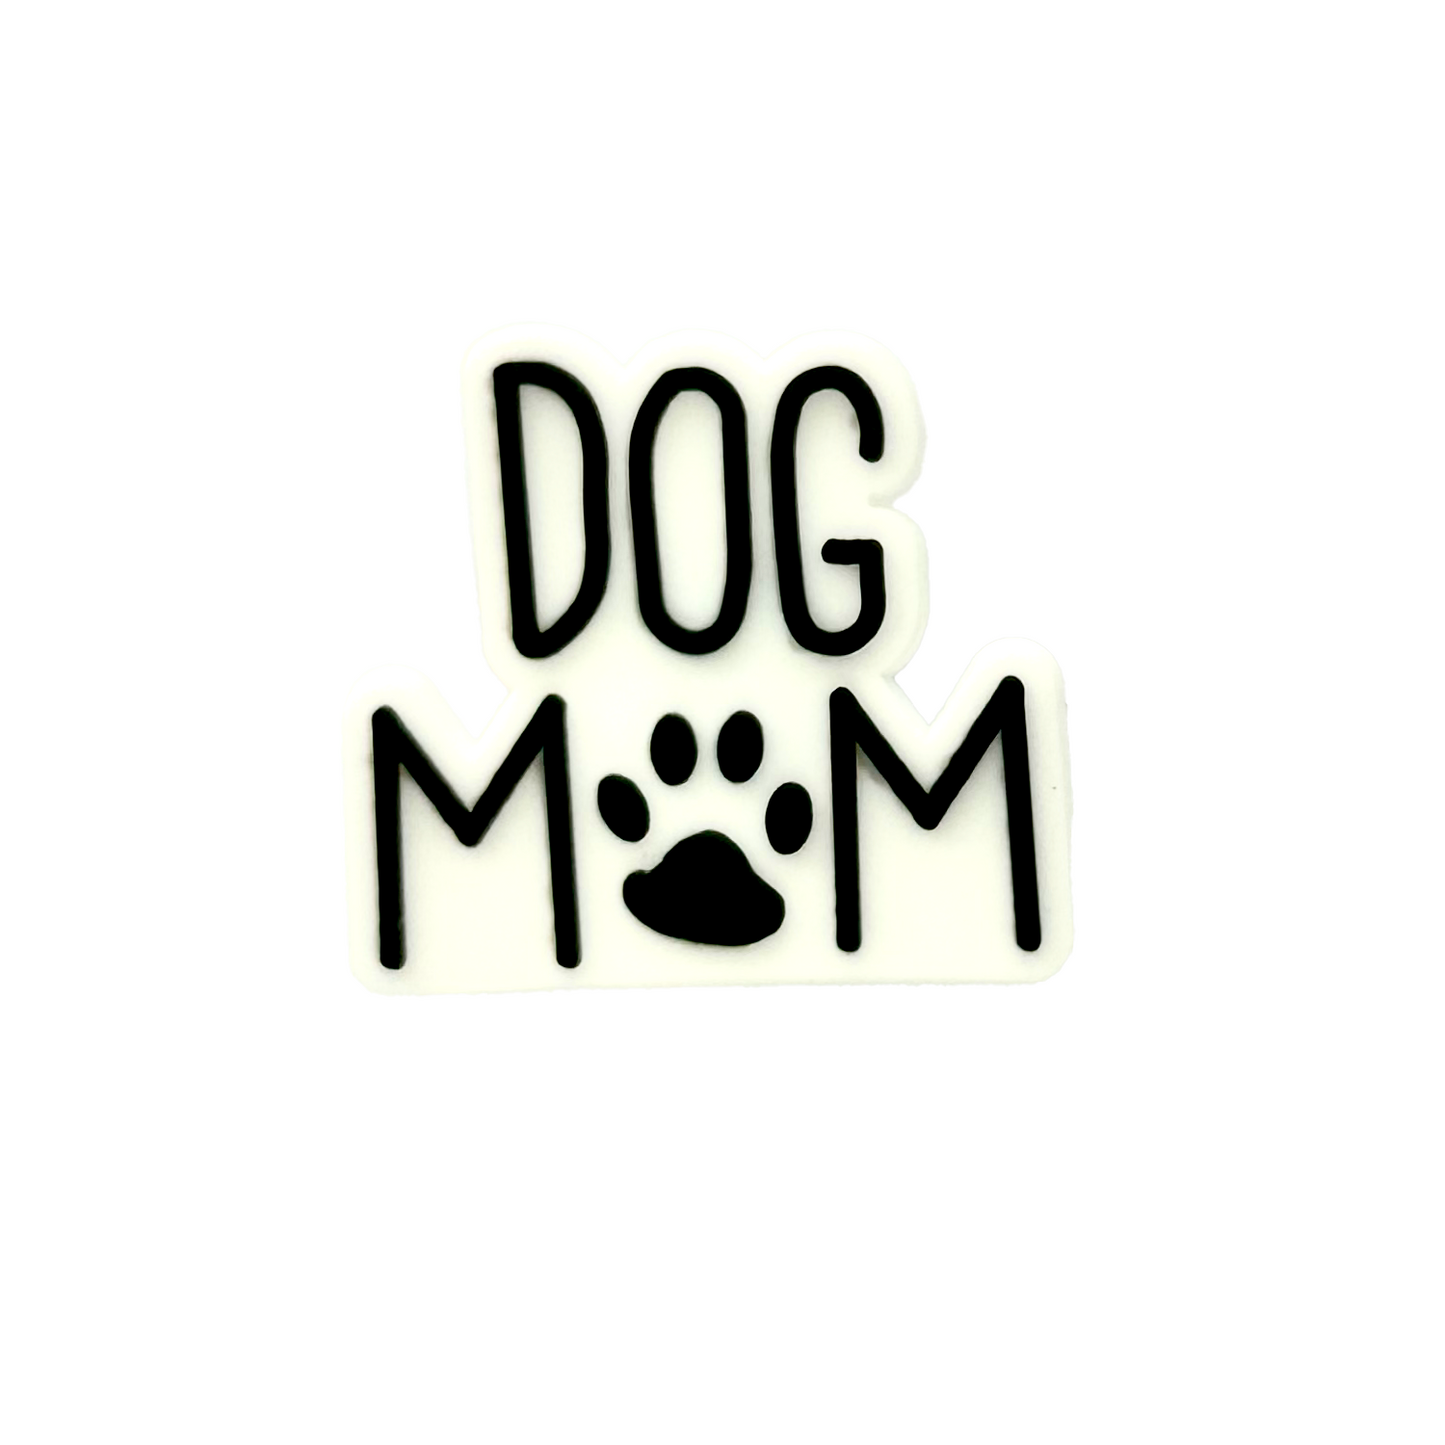 Dog Mom - Pawpins Charm